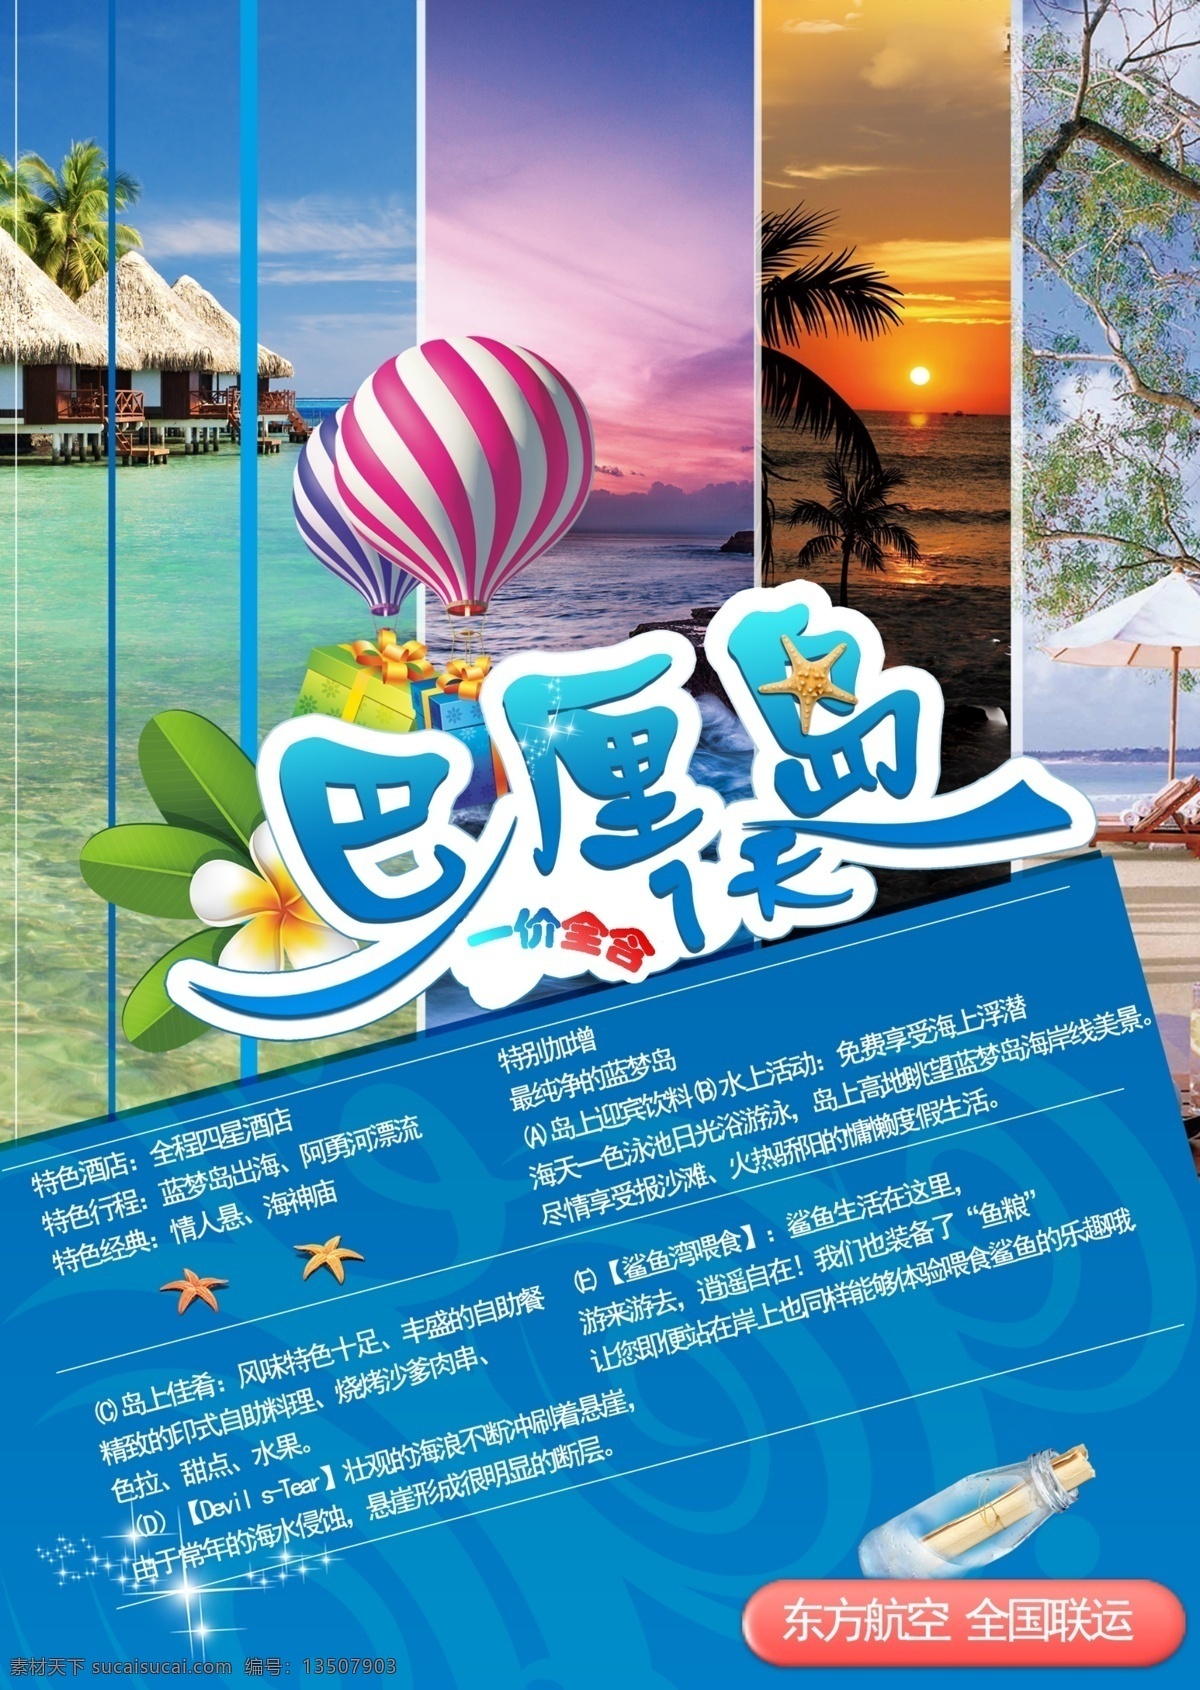 巴厘岛 旅游 排版 旅游海报 设计排版 蓝色